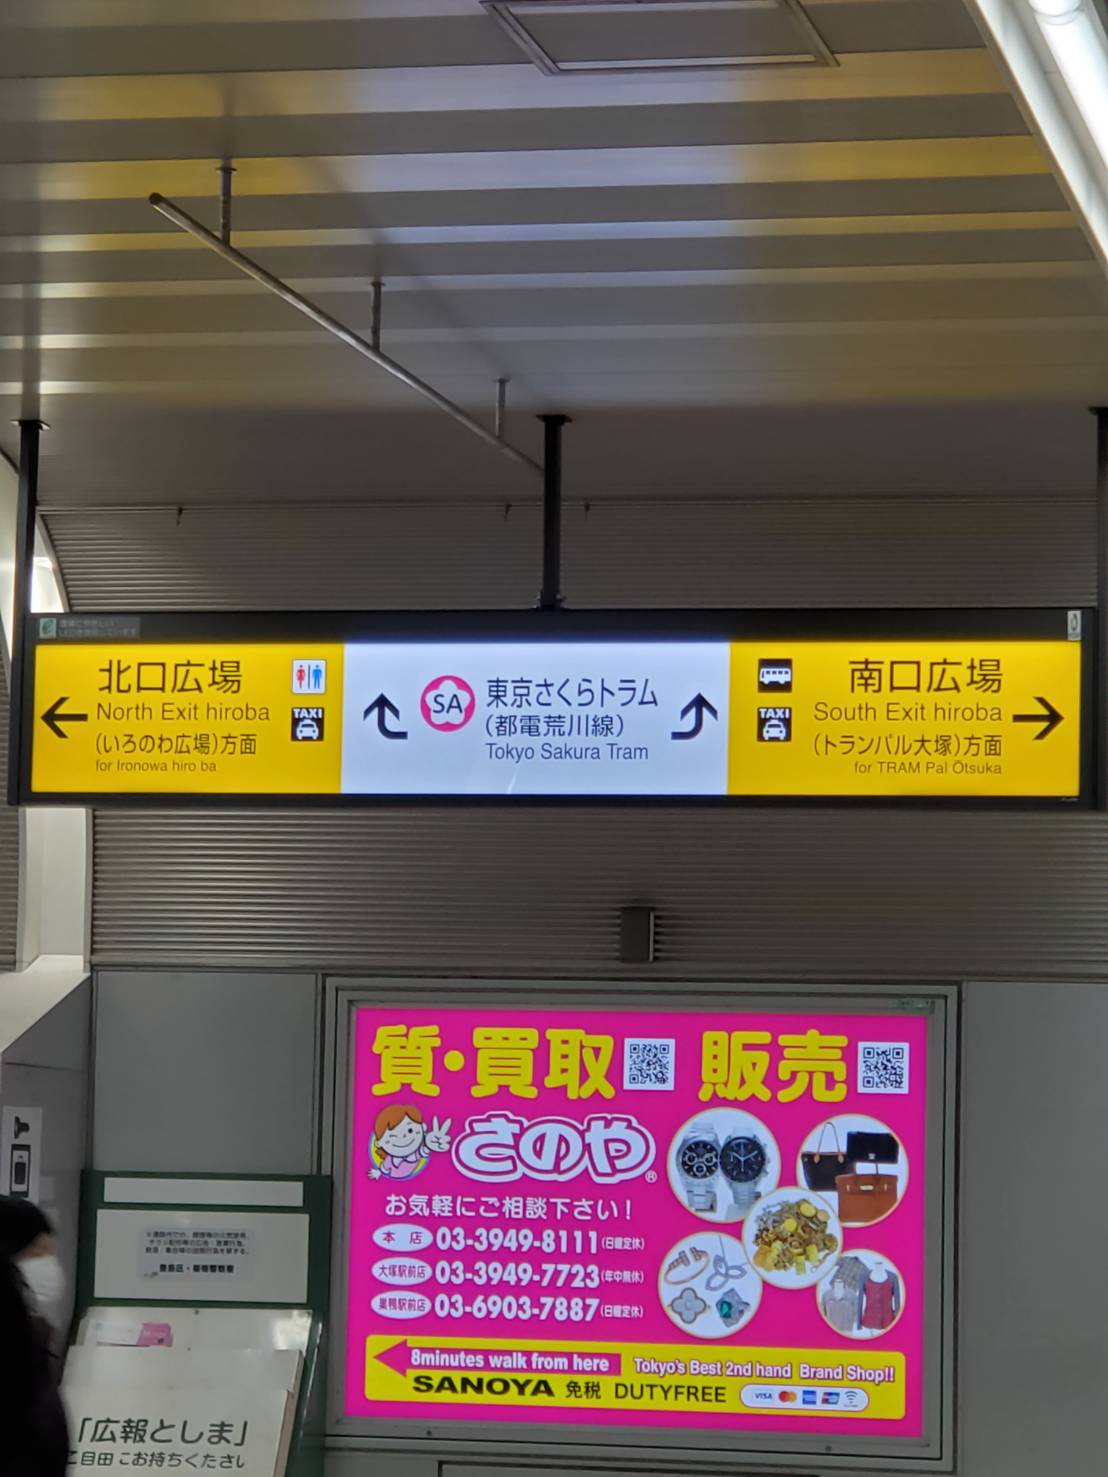 大塚駅改札を出たら南口方面(右)へ行きます